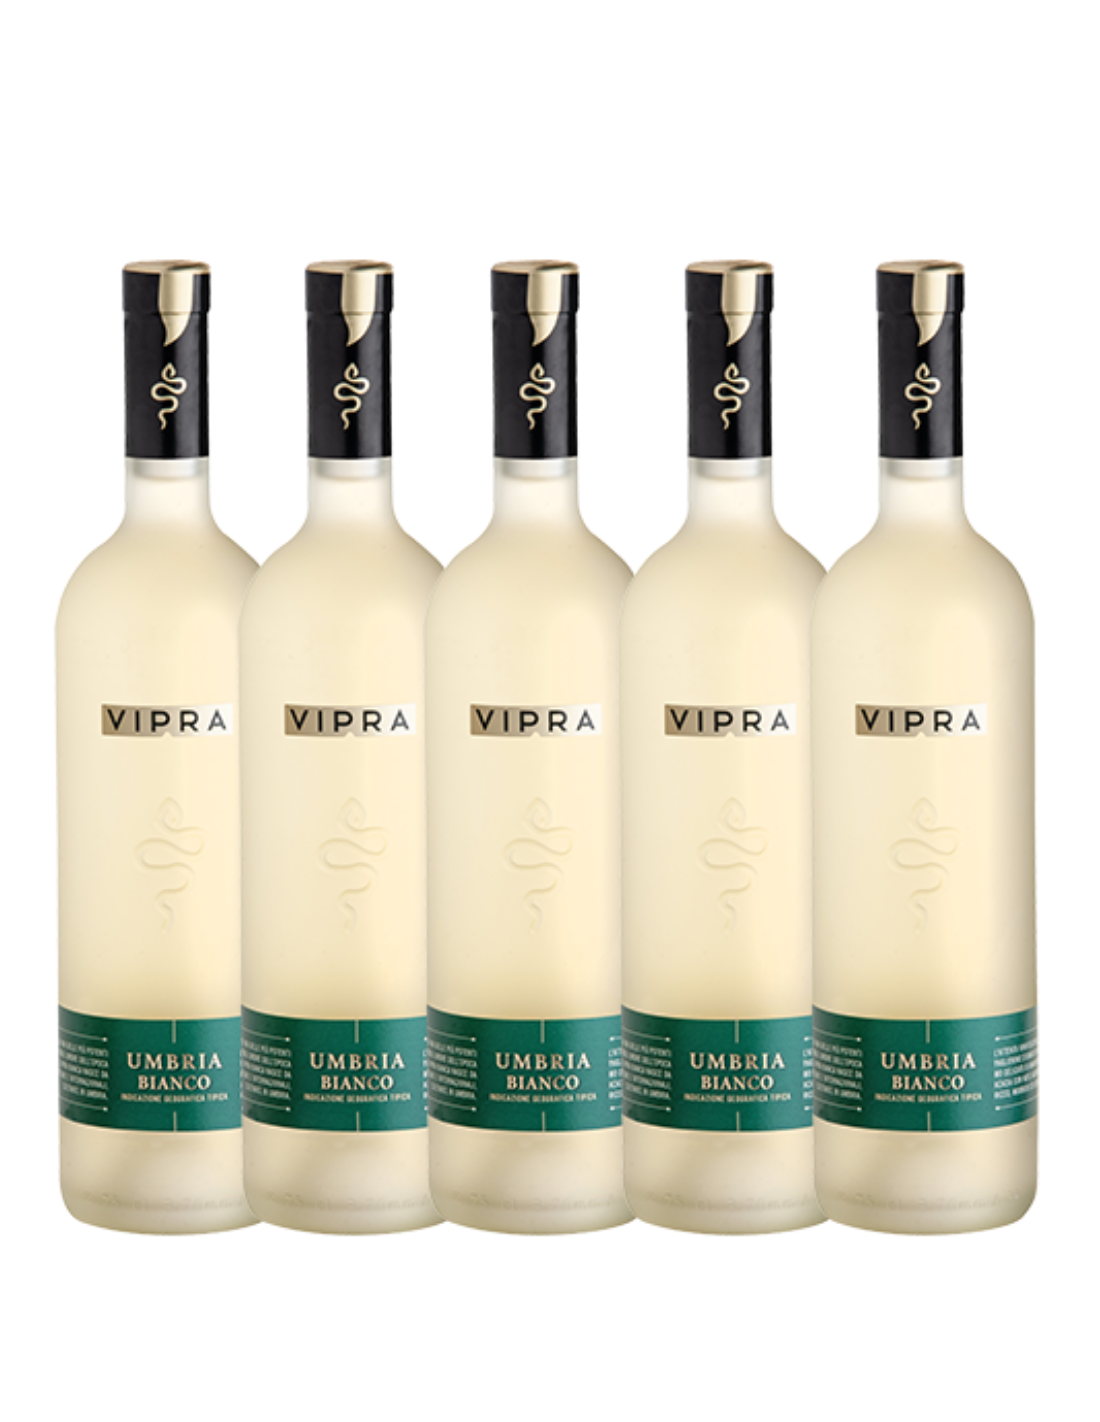 Pachet 5 sticle Vin alb, Vipra Bianca Bigi Umbria, 0.75L, Italia alcooldiscount.ro